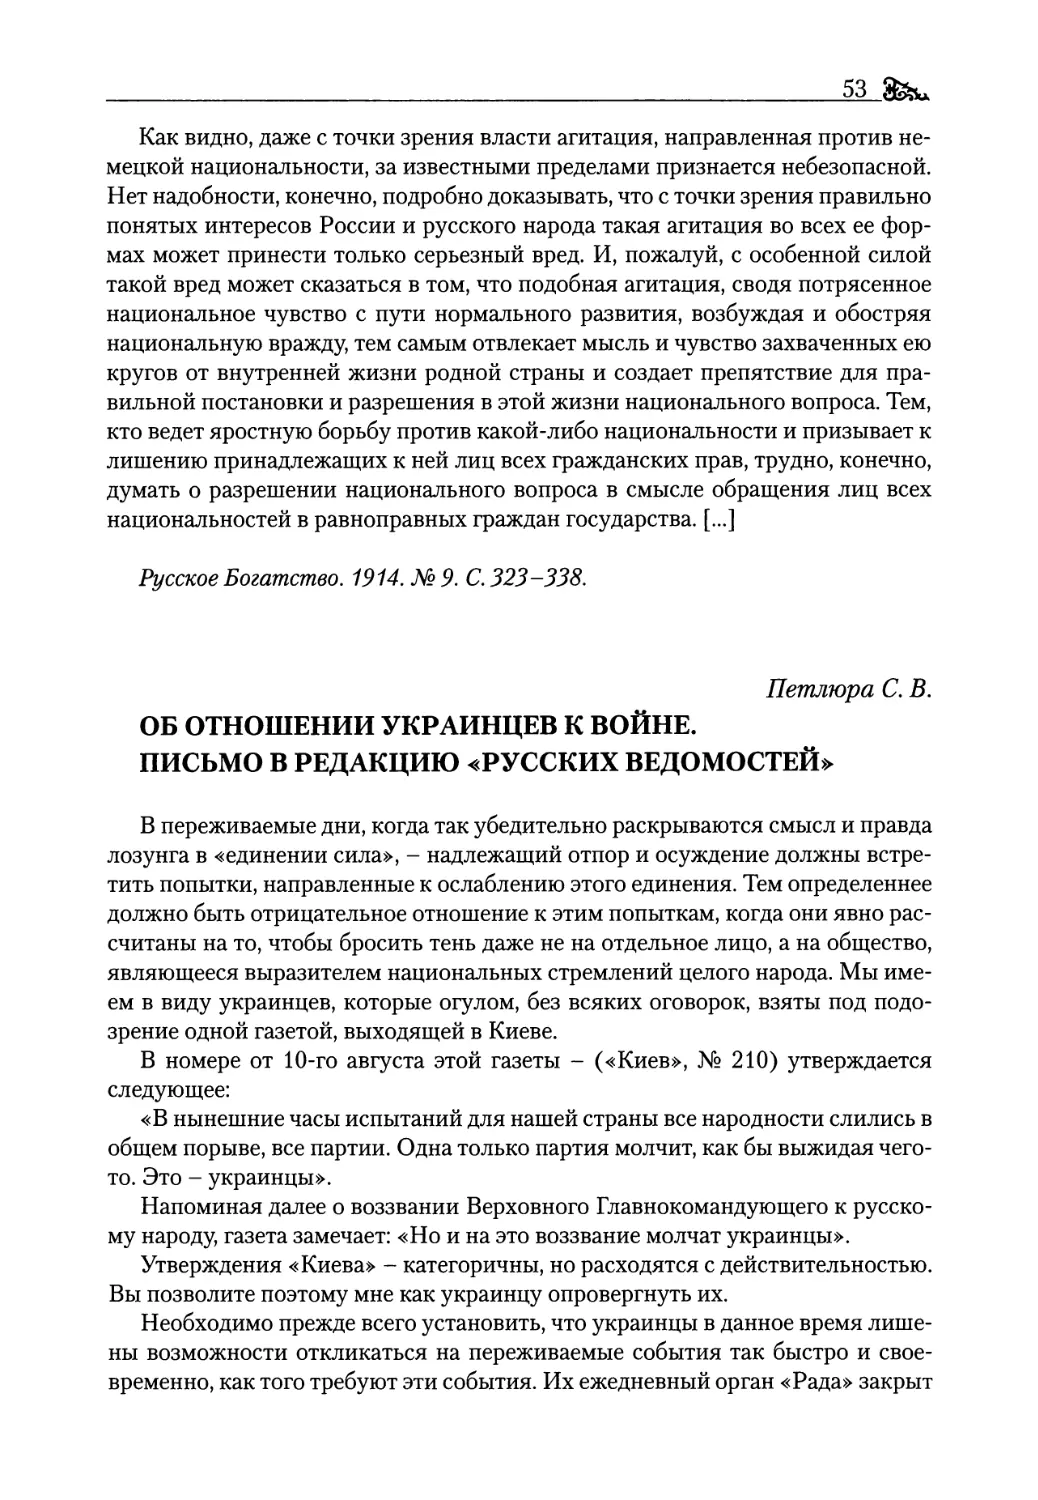 Петлюра С. В. Об отношении украинцев к войне. Письмо в редакцию «Русских Ведомостей»